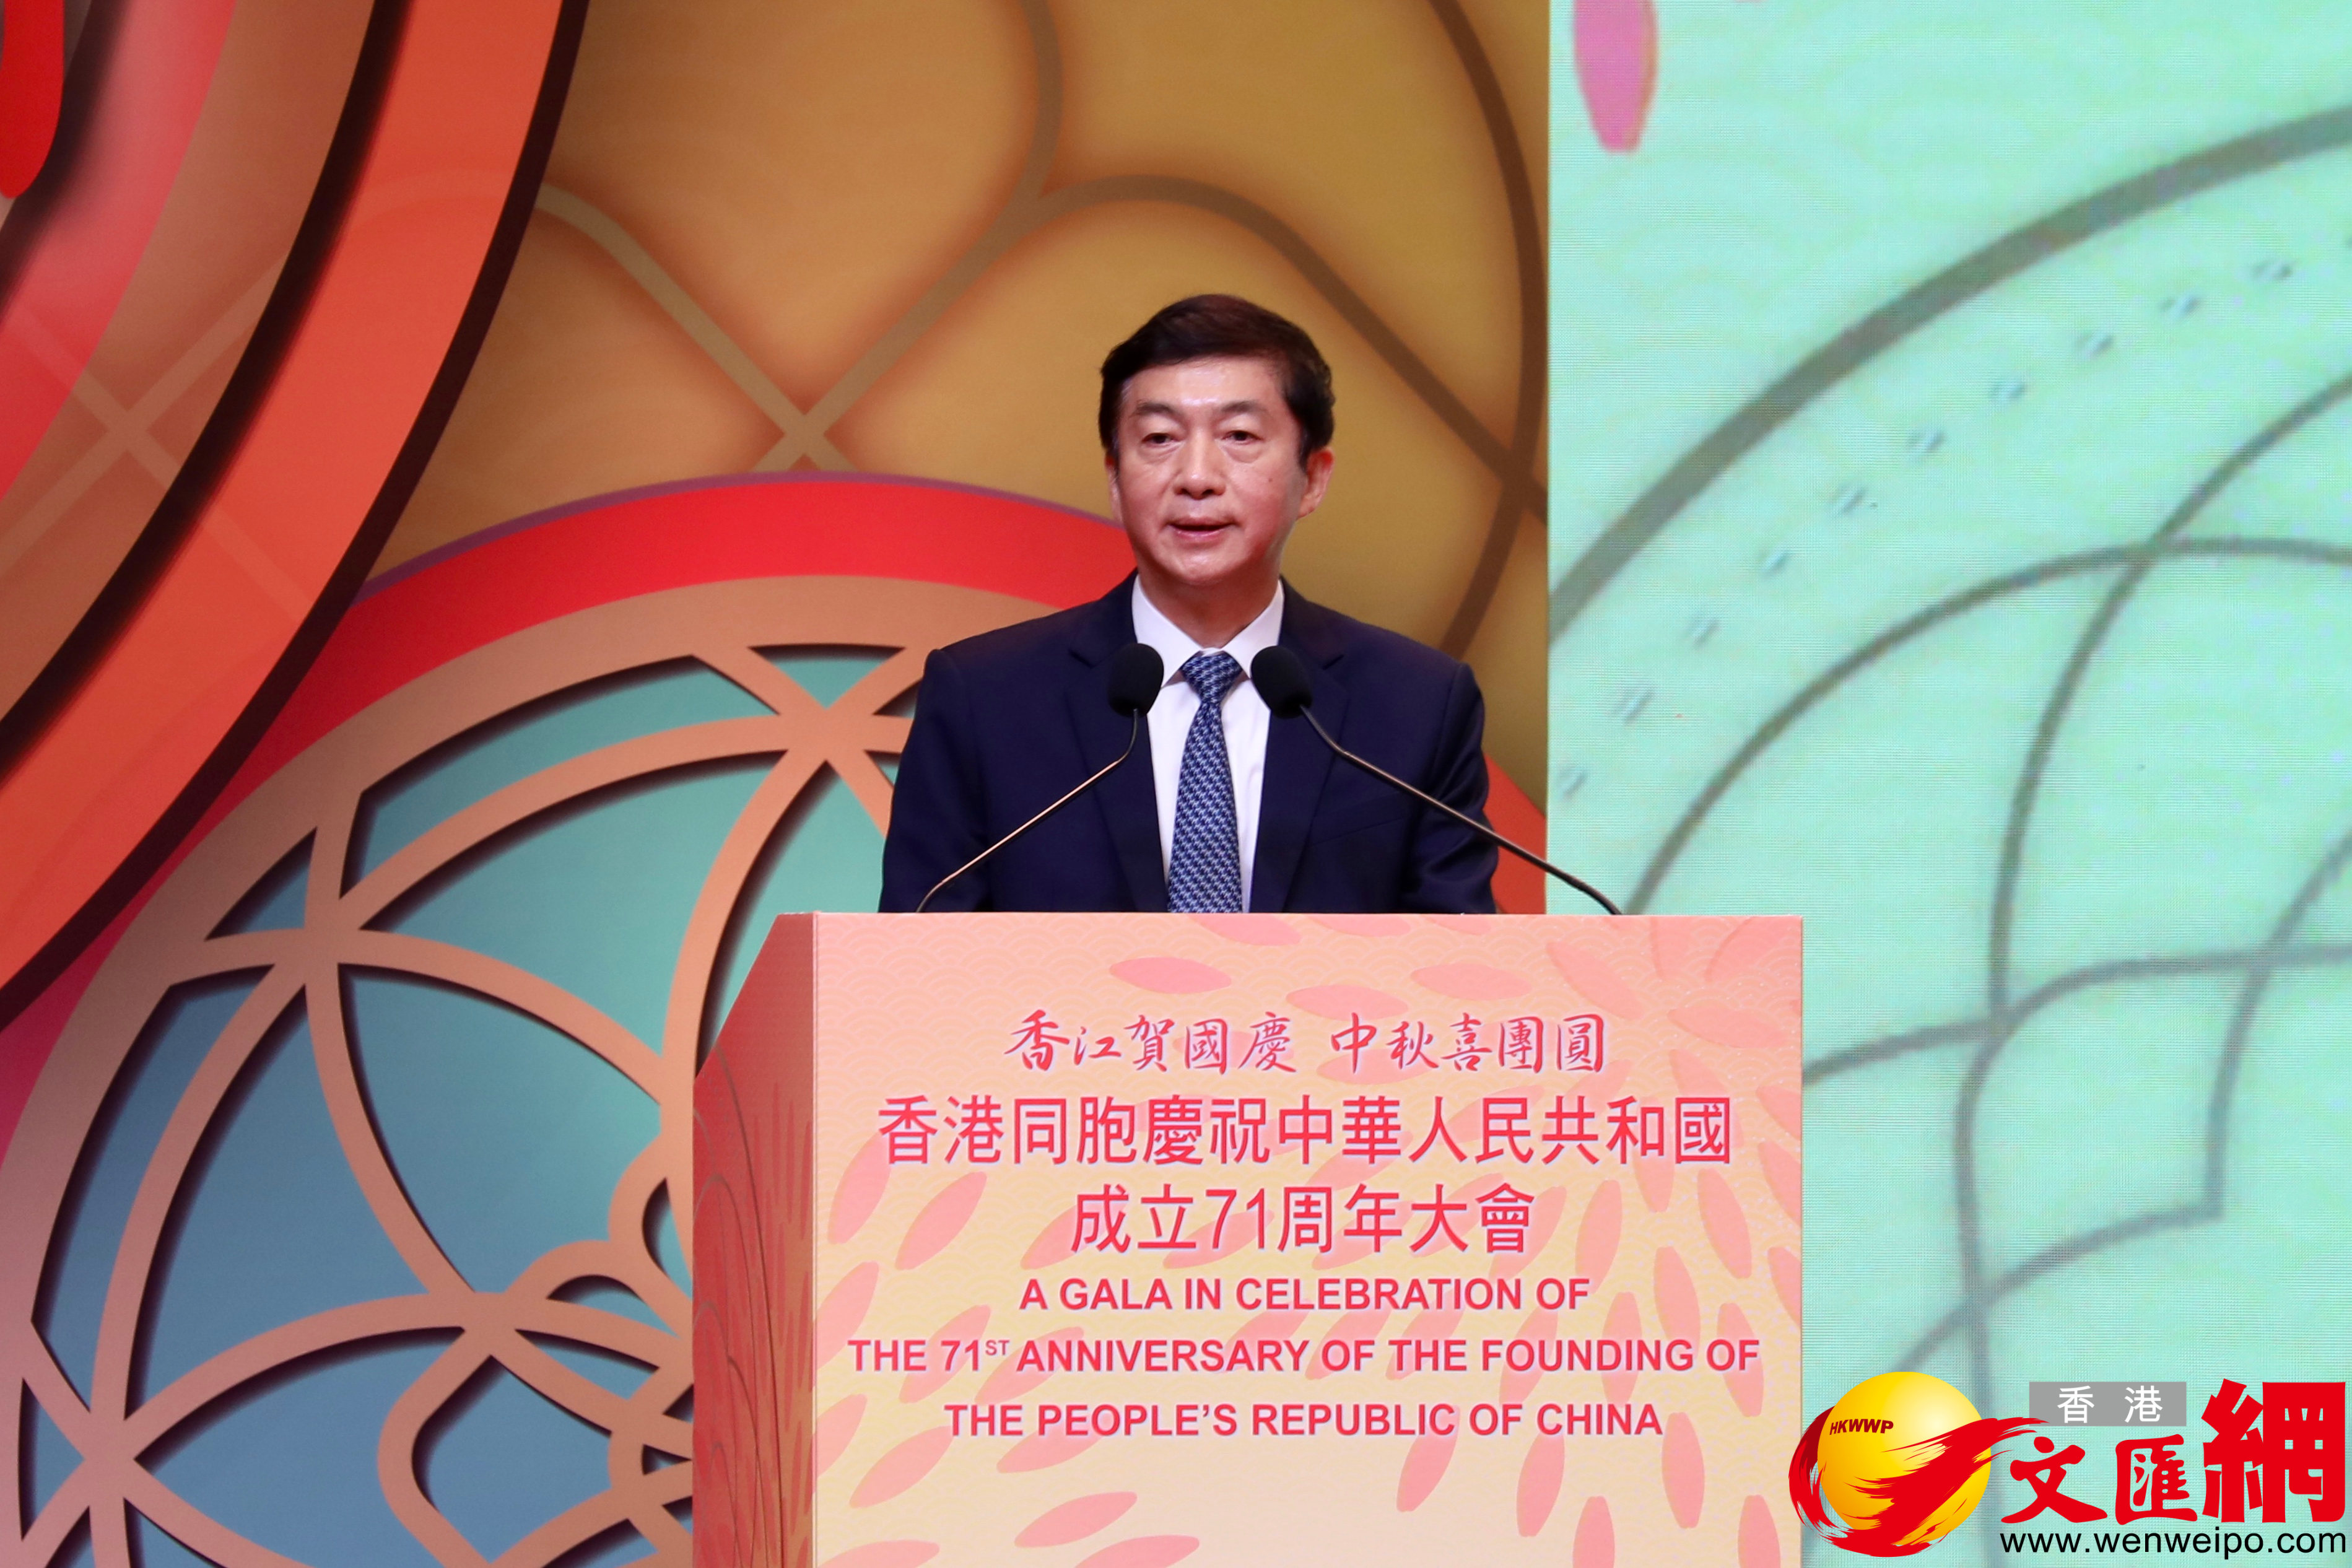 中央政府駐港聯絡辦主任駱惠寧出席慶祝新中國成立71周年大會并致辭。（大公文匯全媒體記者攝）